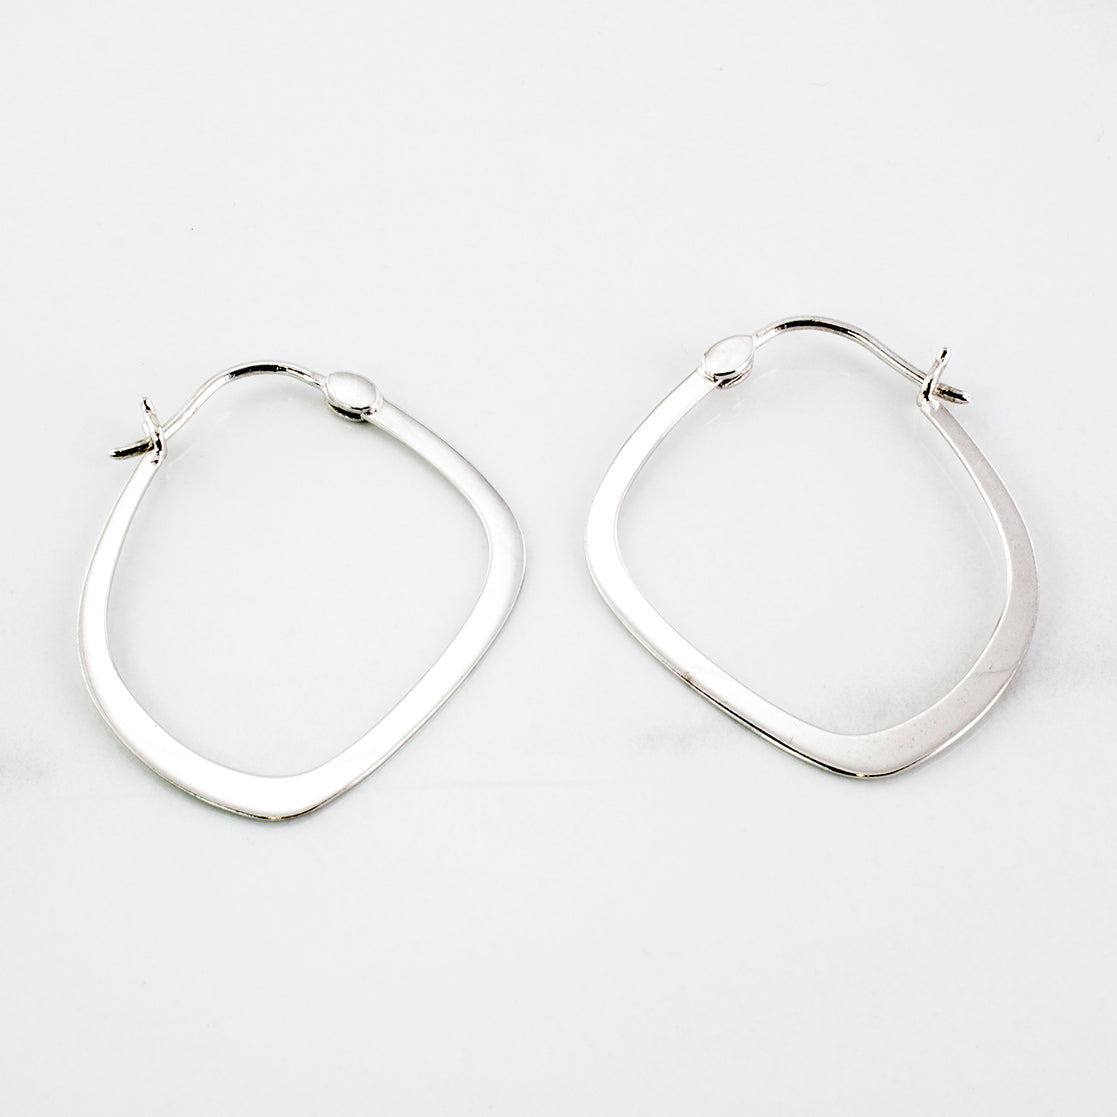 Birks' Abstract Hoop Earrings